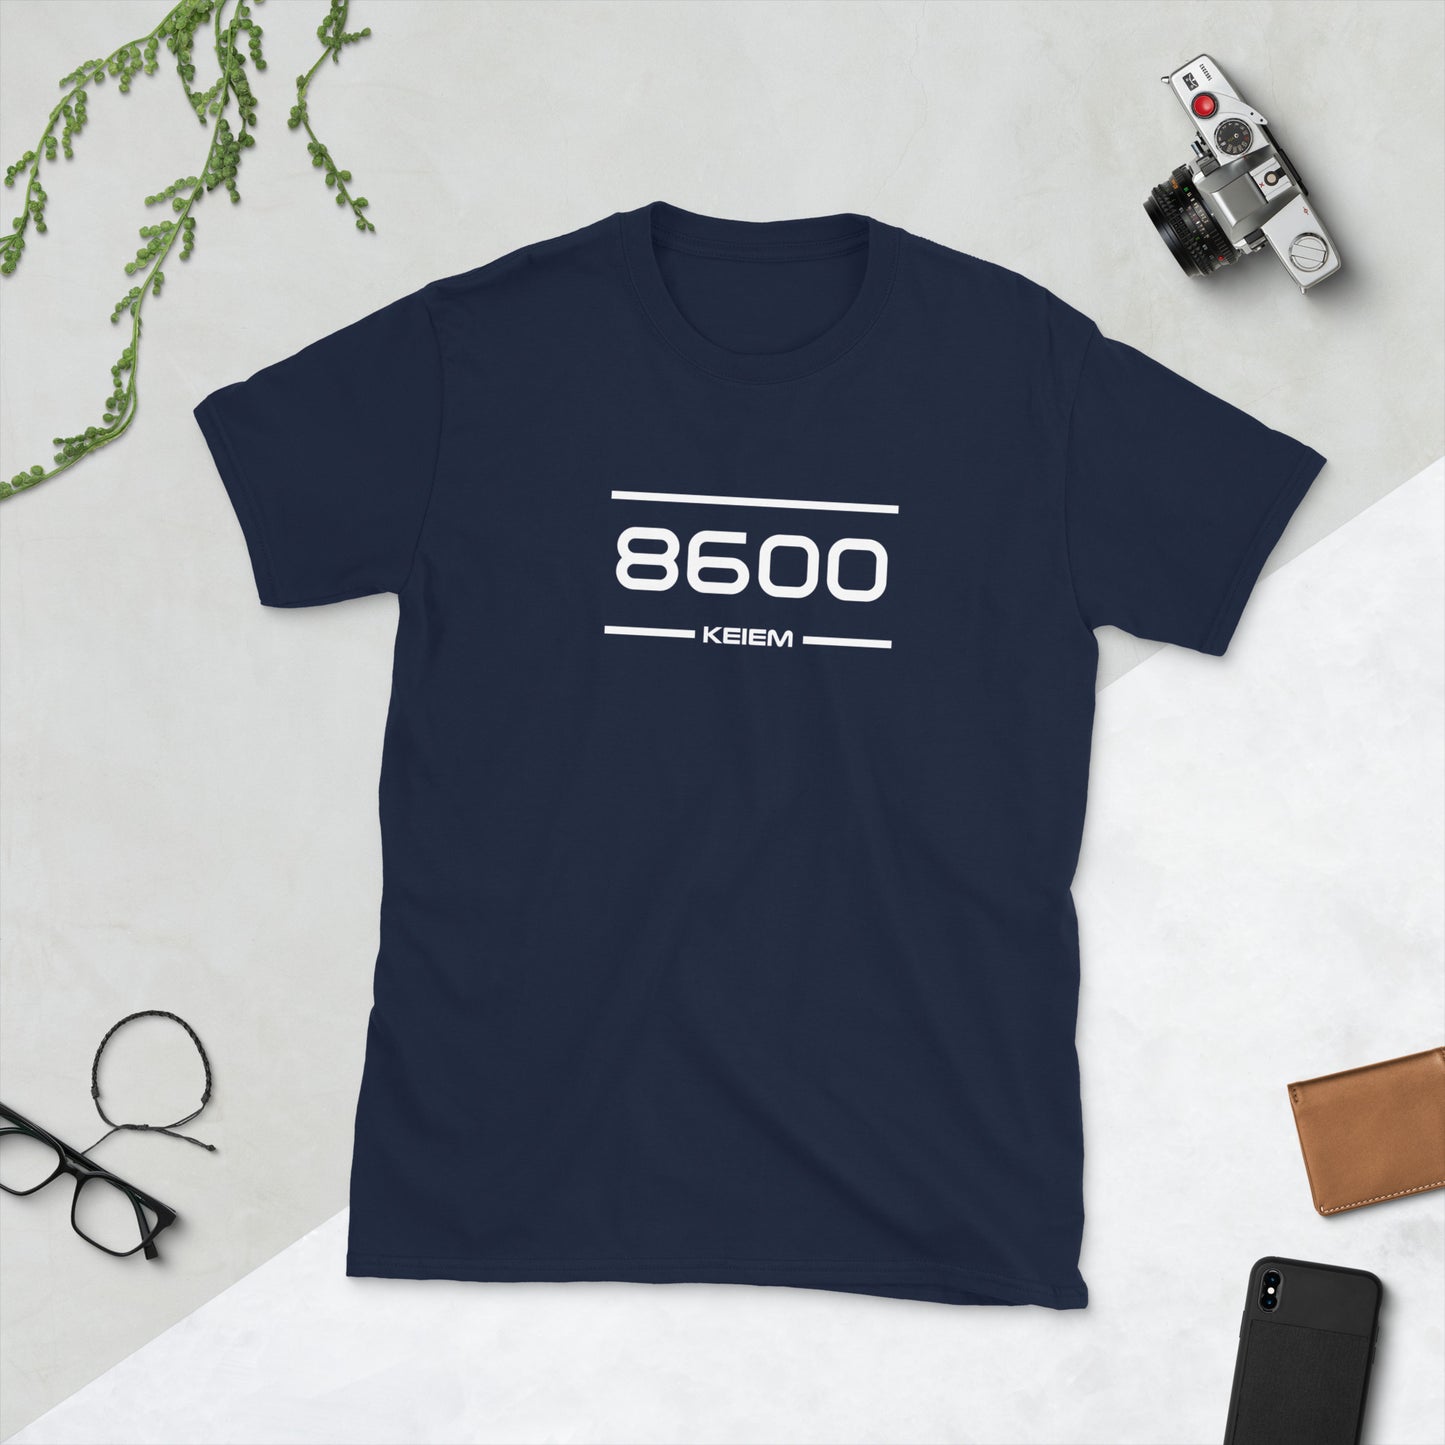 Tshirt - 8600 - Keiem